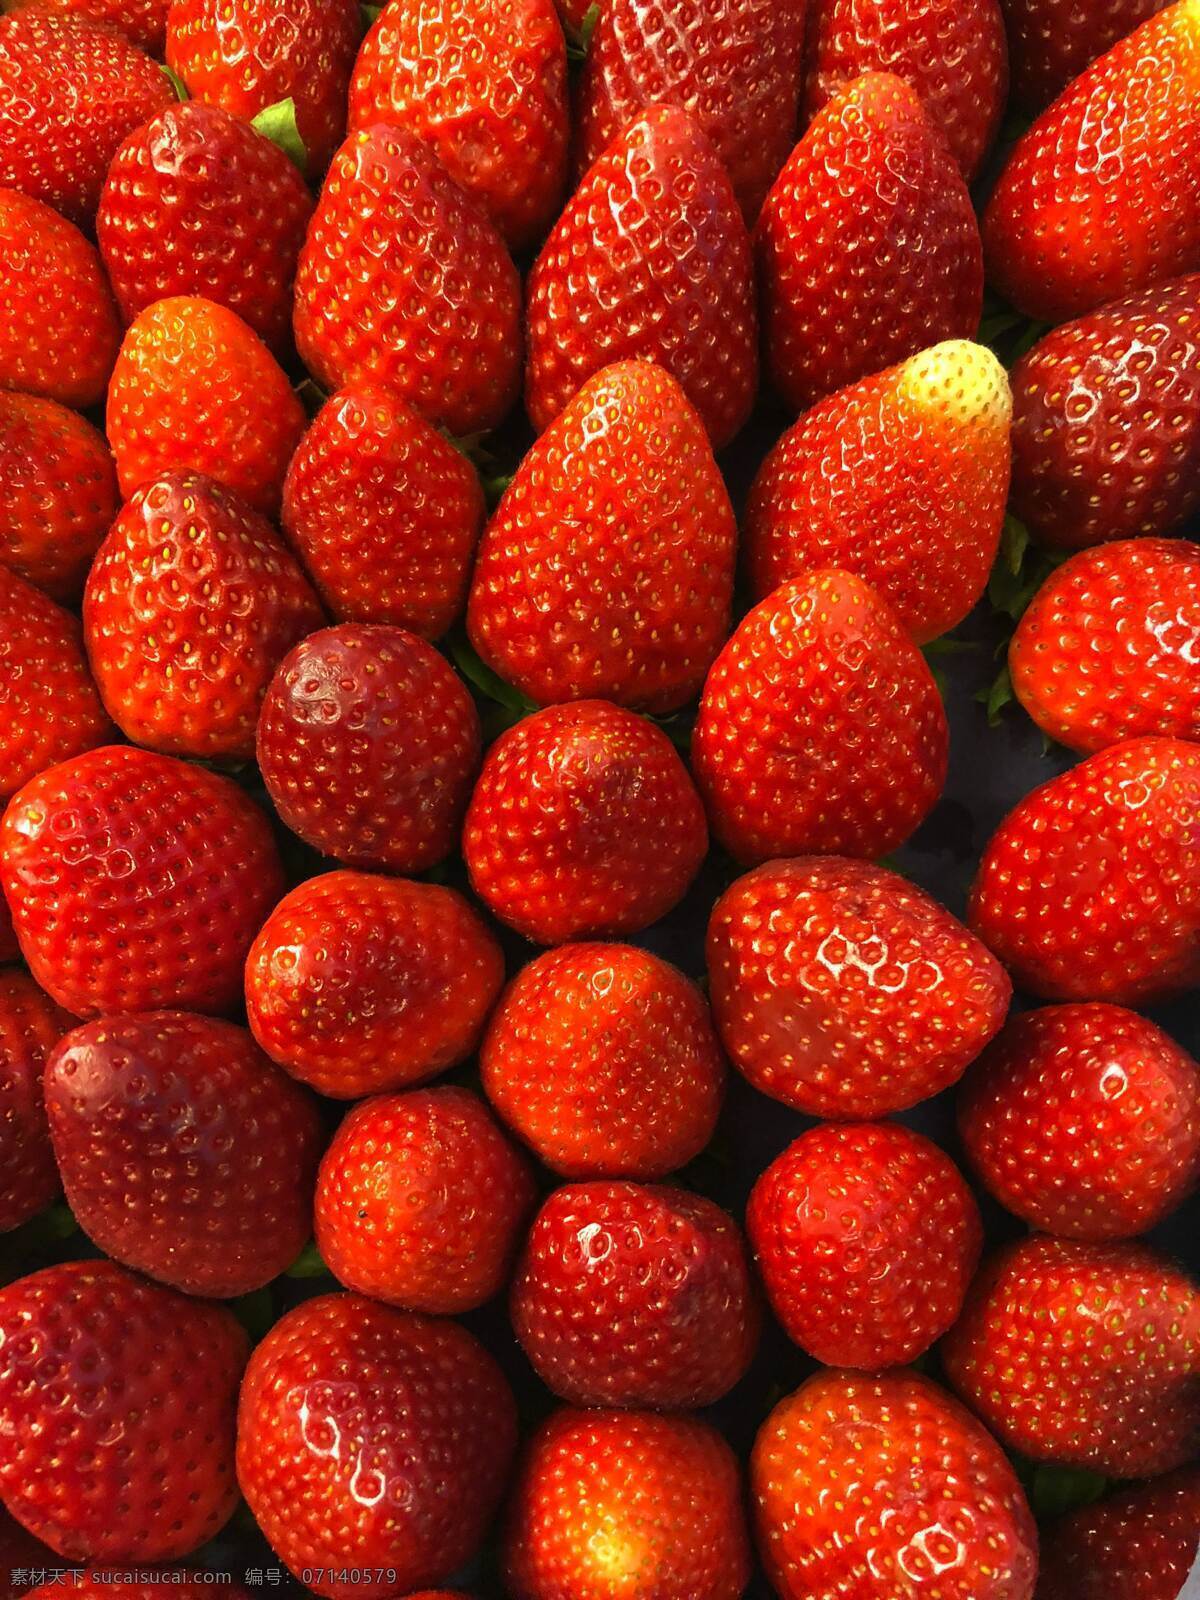 水果 有机食品 绿色食品 大草莓 奶油草莓 丹东99草莓 牛奶草莓 红颜草莓 新鲜草莓 云南牛奶草莓 有机草莓 生物世界